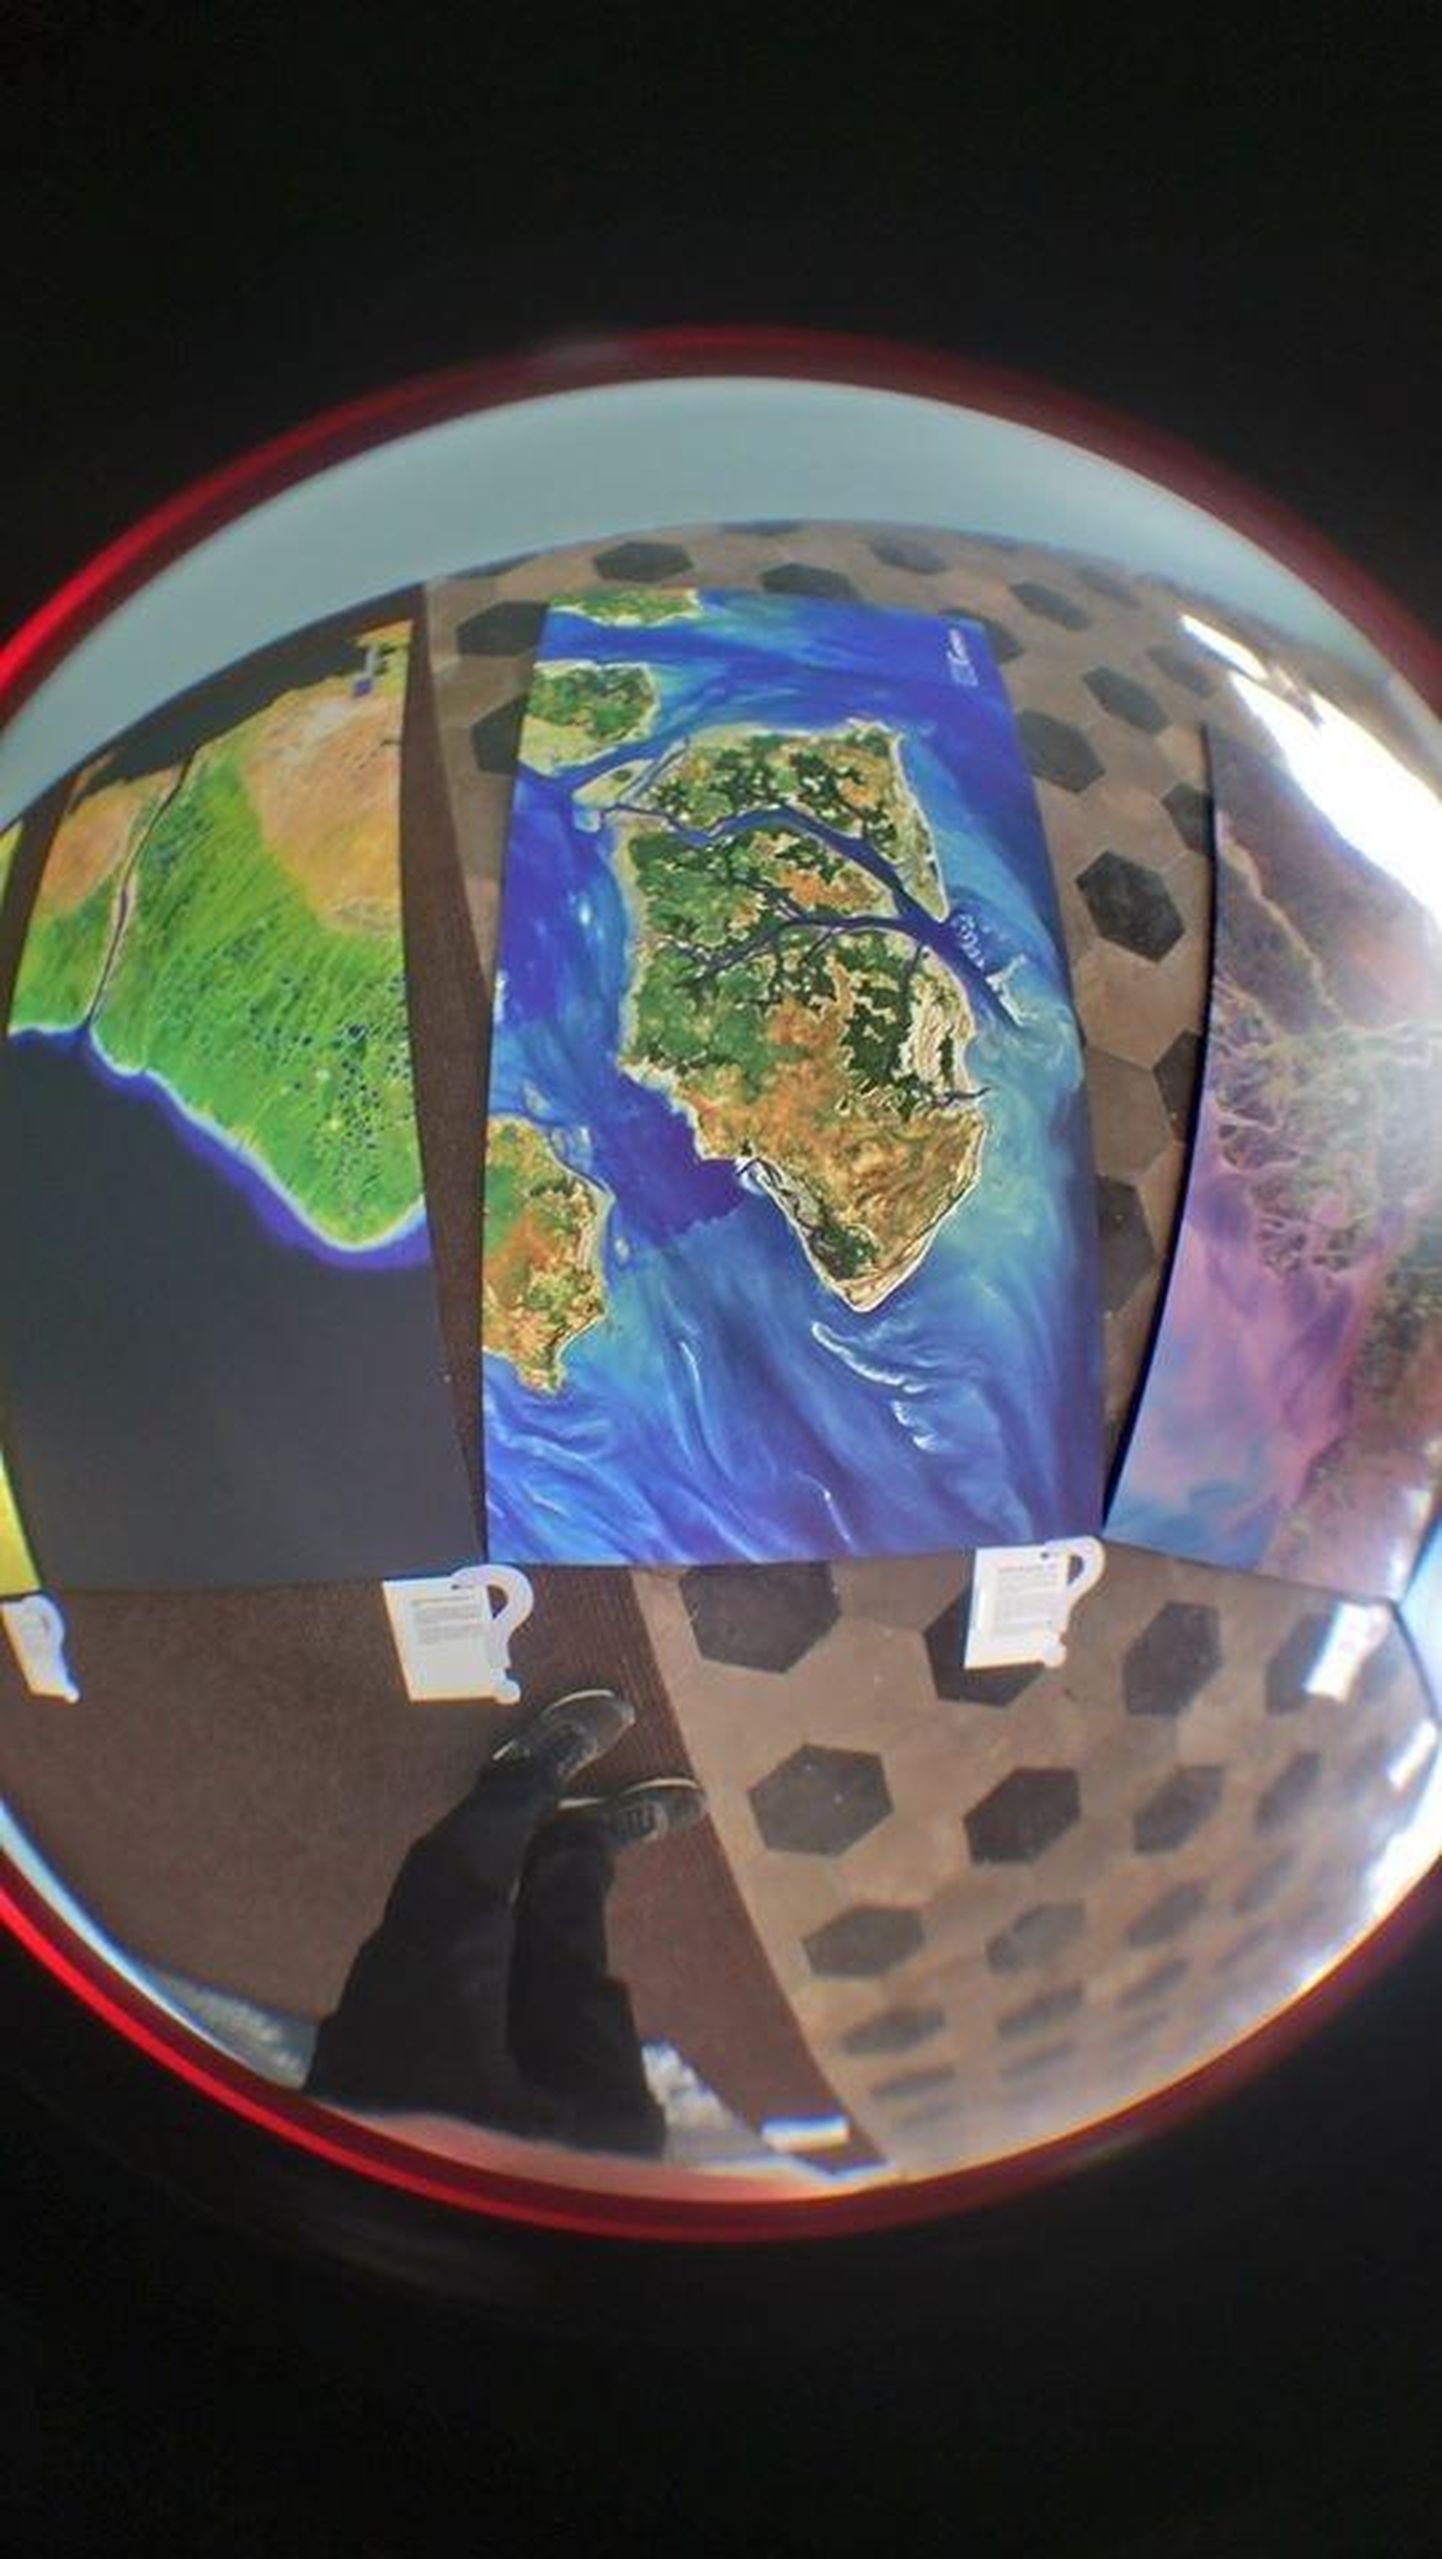 Näitus “Maa päev” vaatab meie planeedile kosmonaudi pilguga.